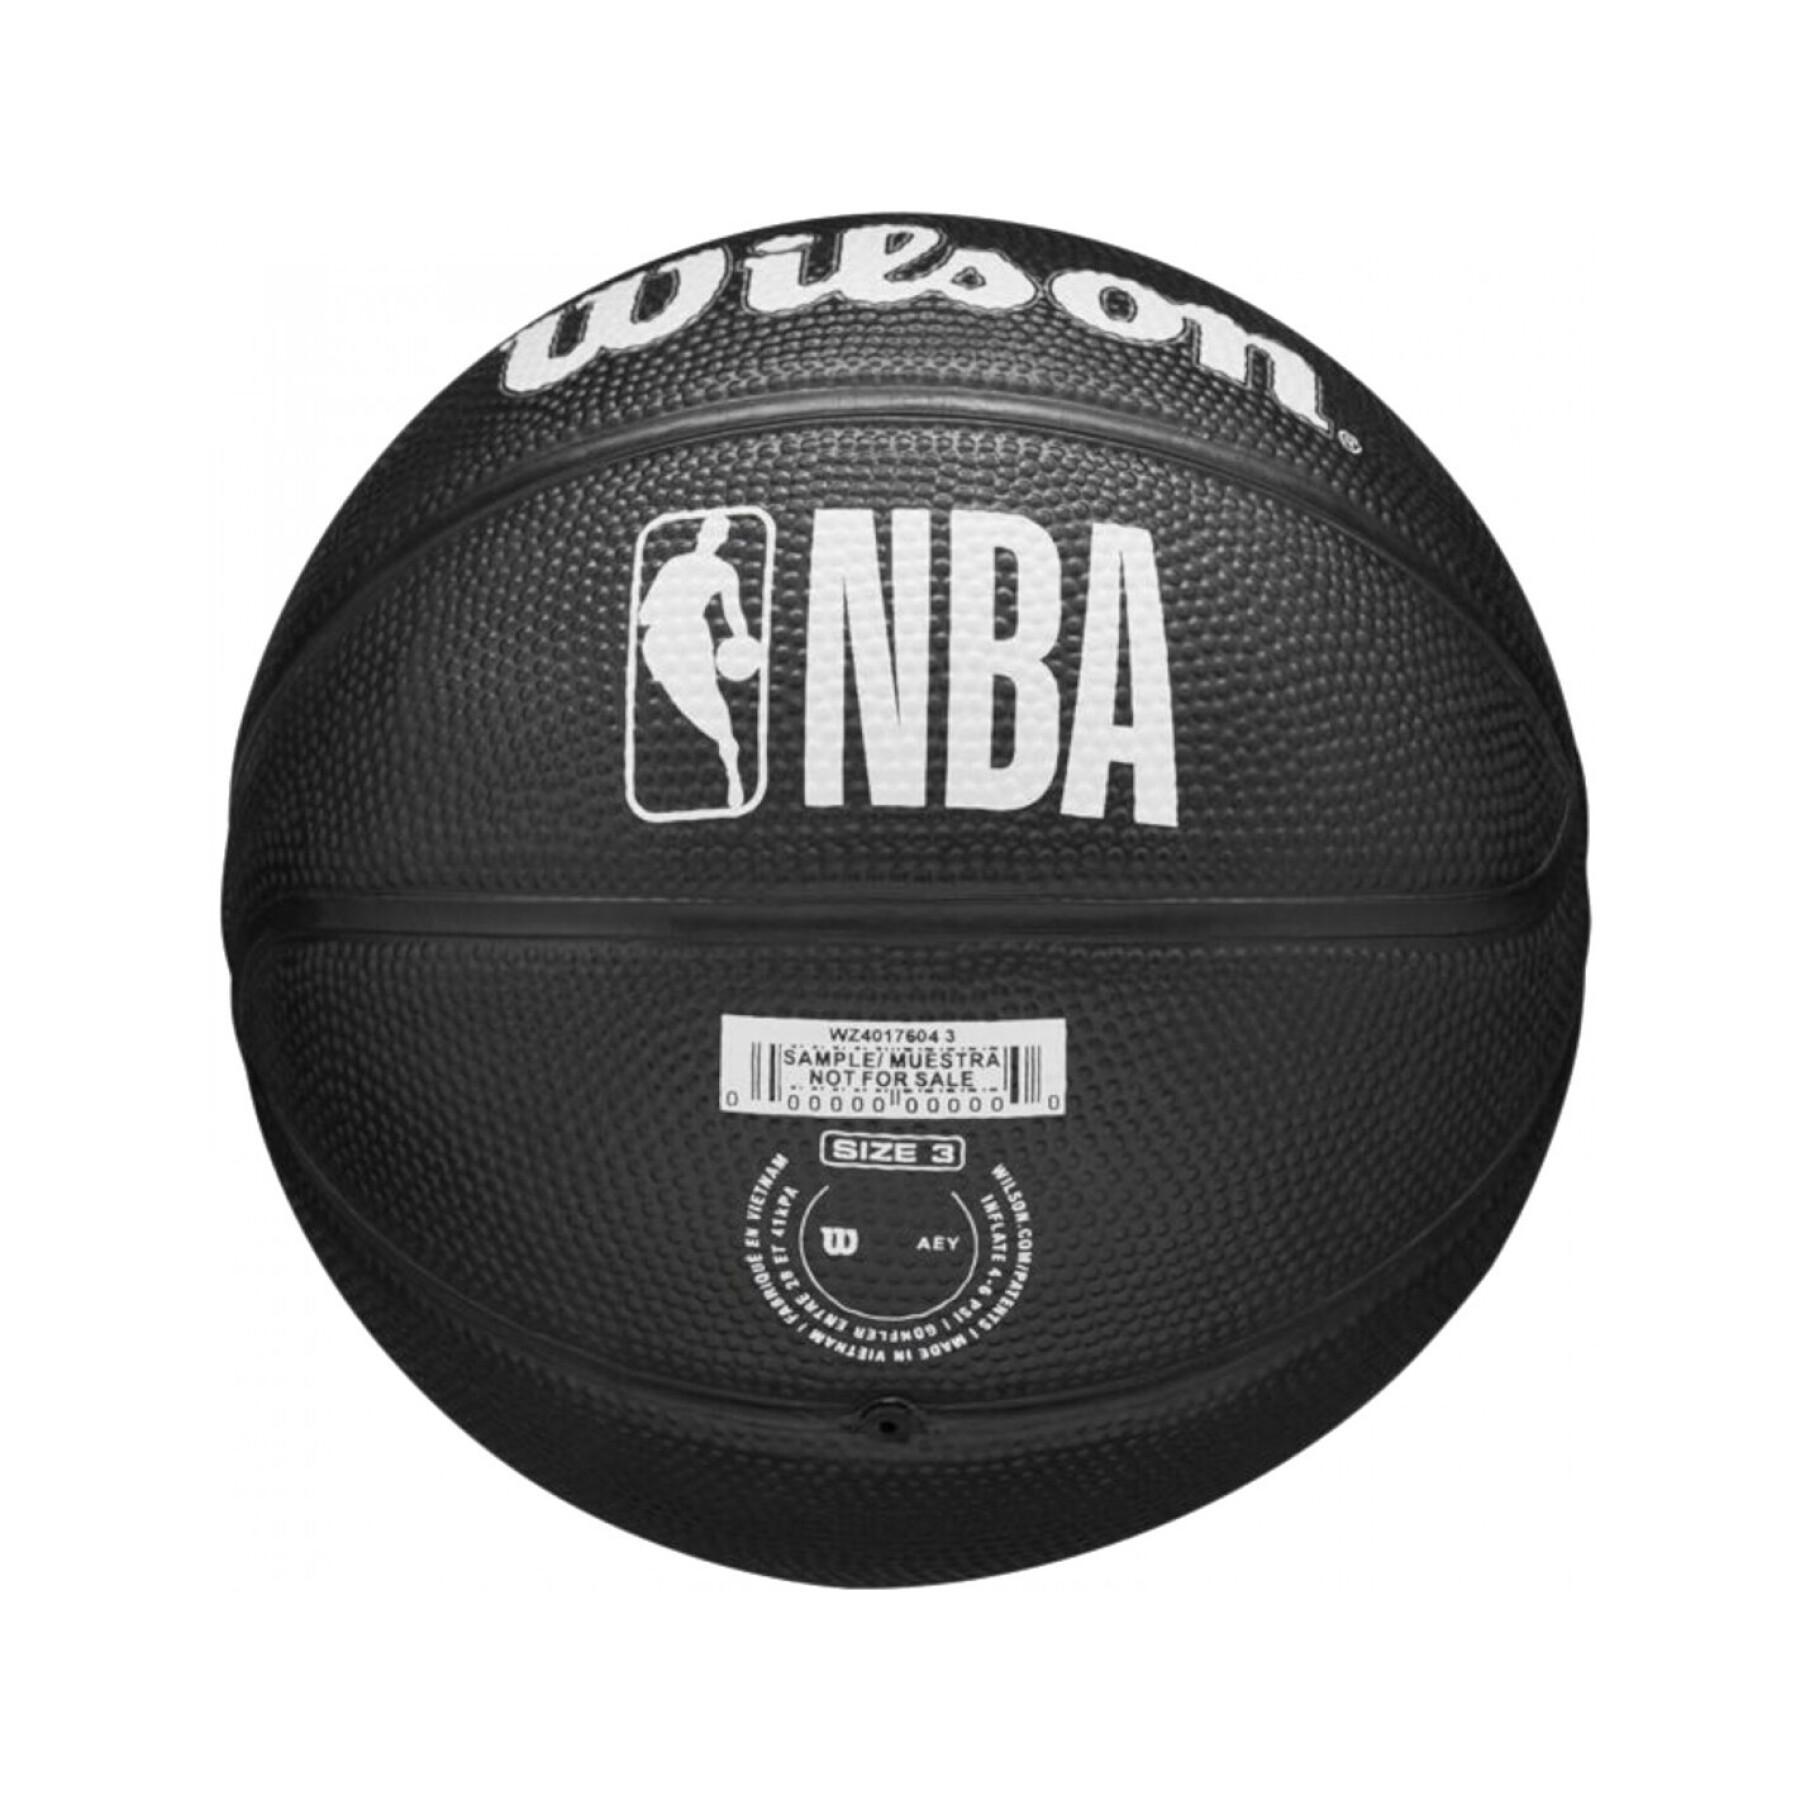 Mini-Basketball Kind Brooklyn Nets NBA Team Tribute